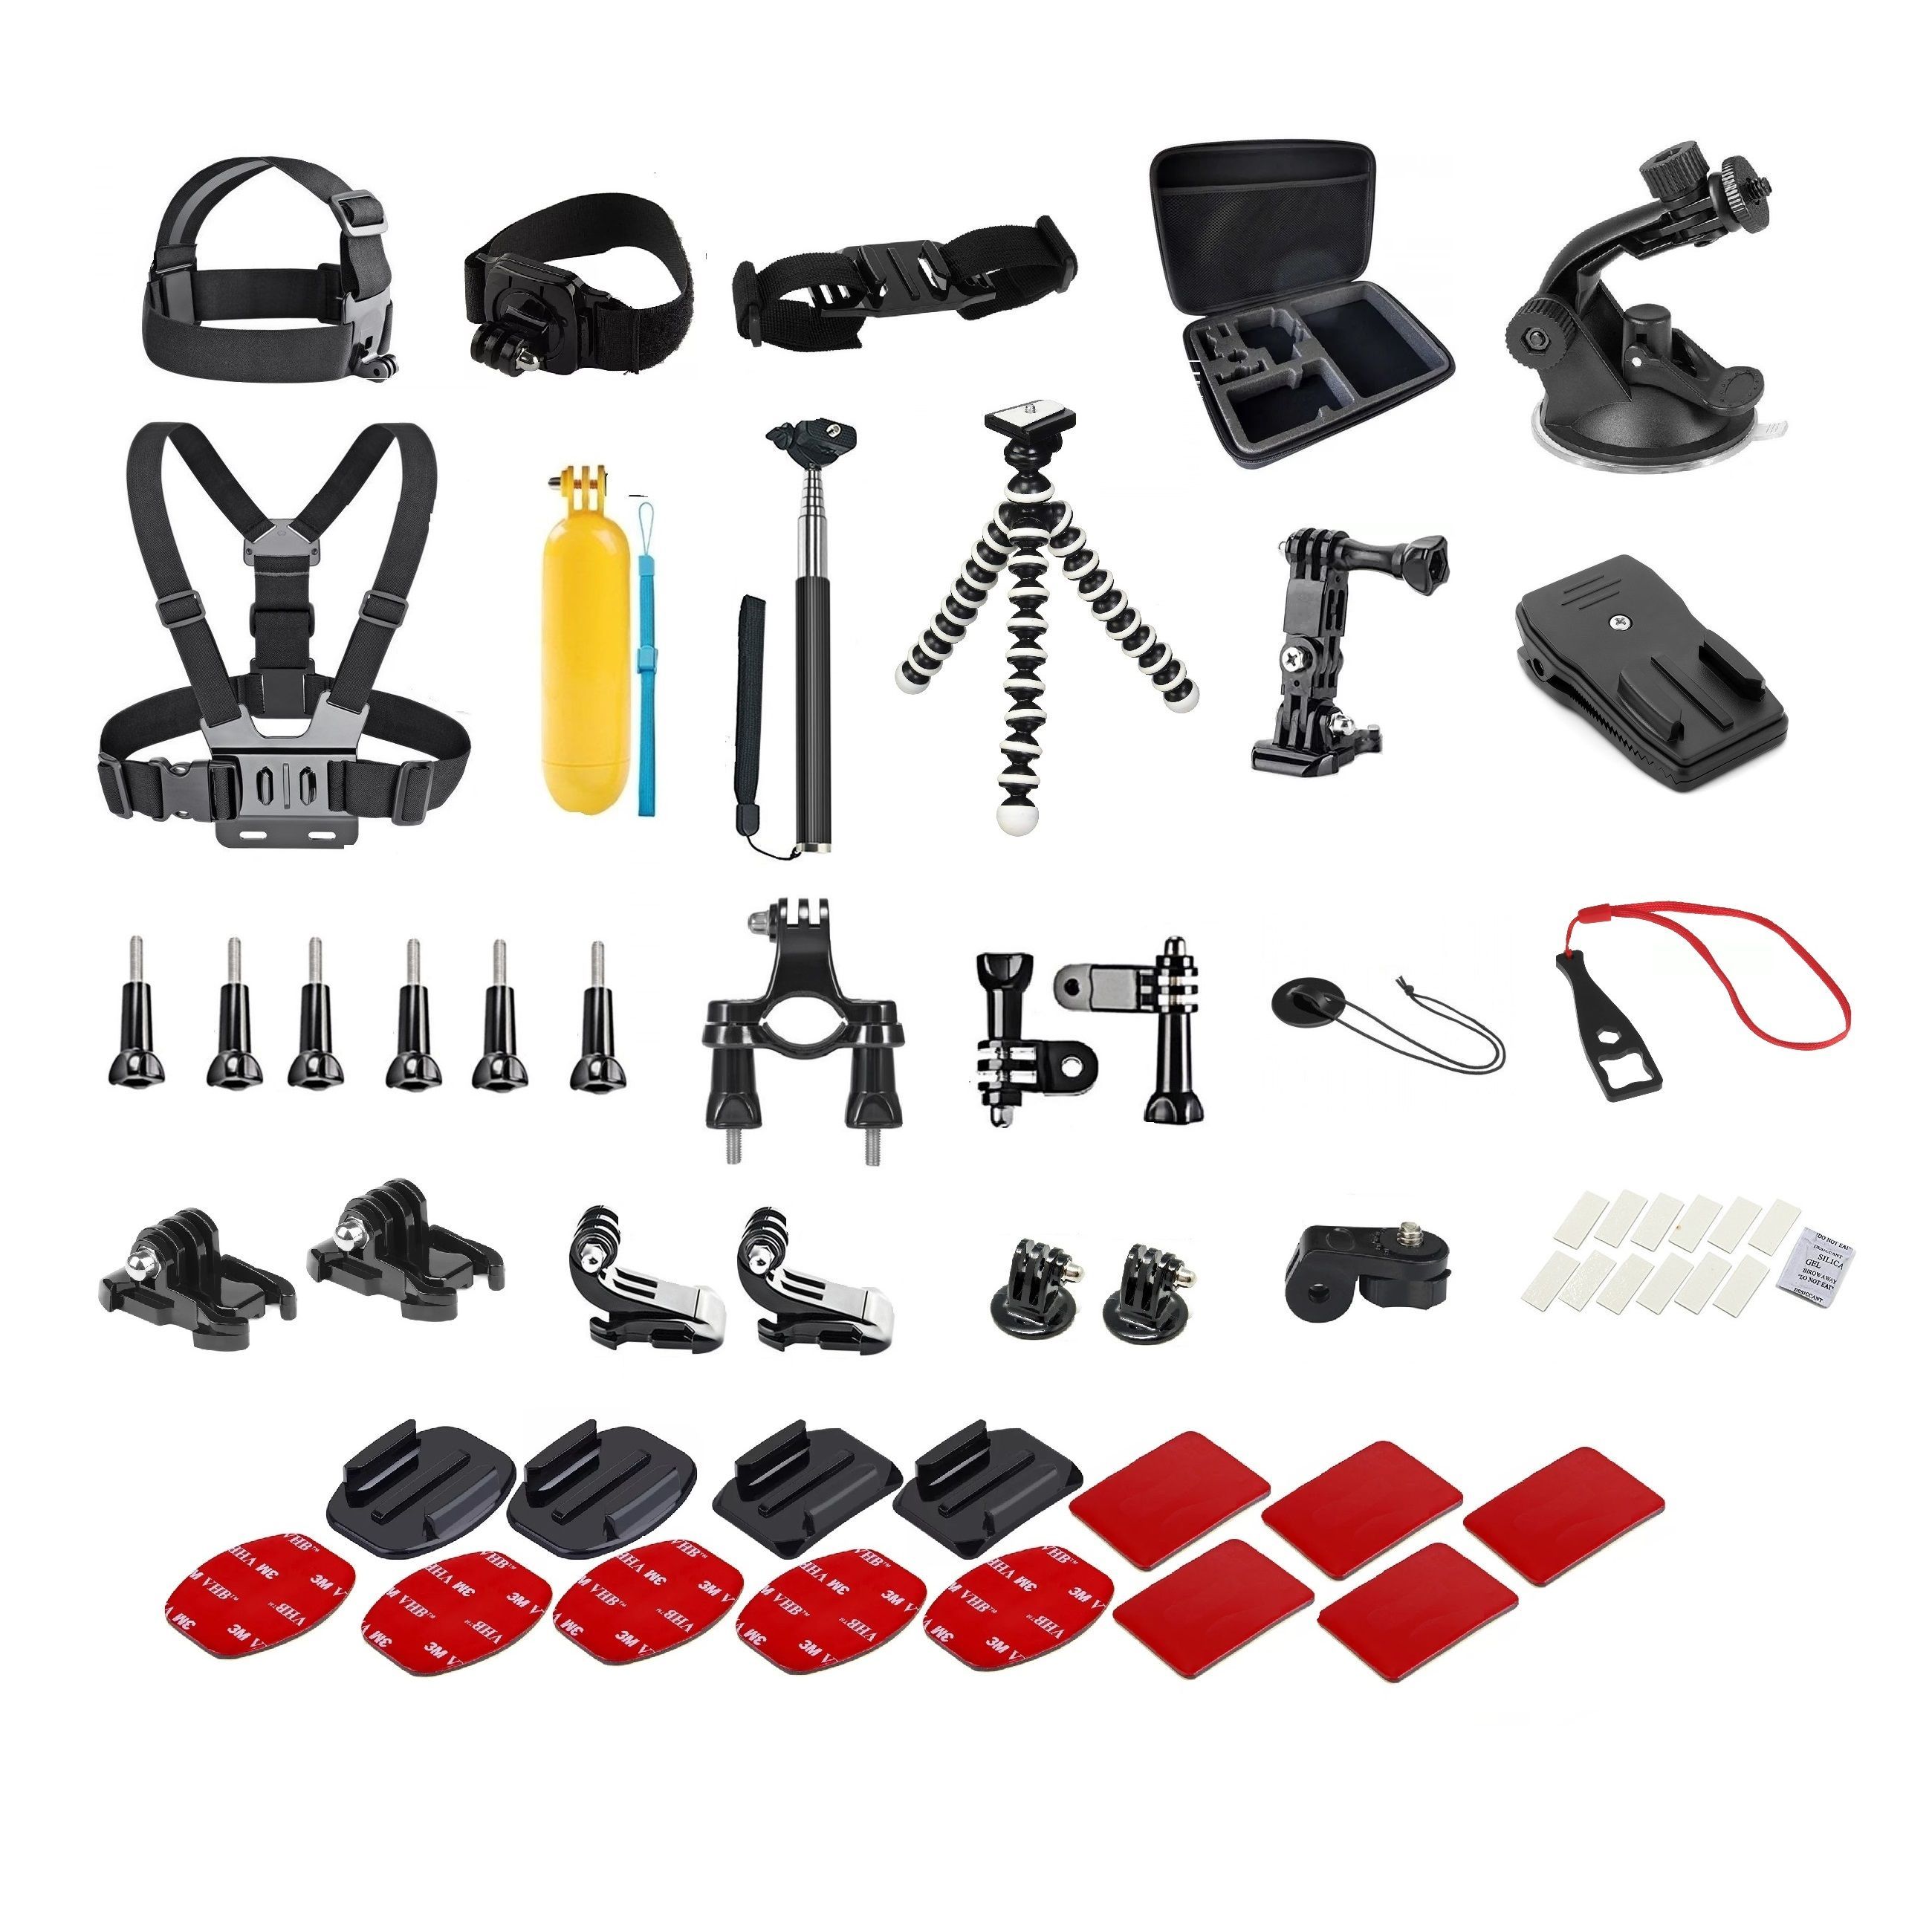 Kit de accesorios para cámara deportiva 46 piezas